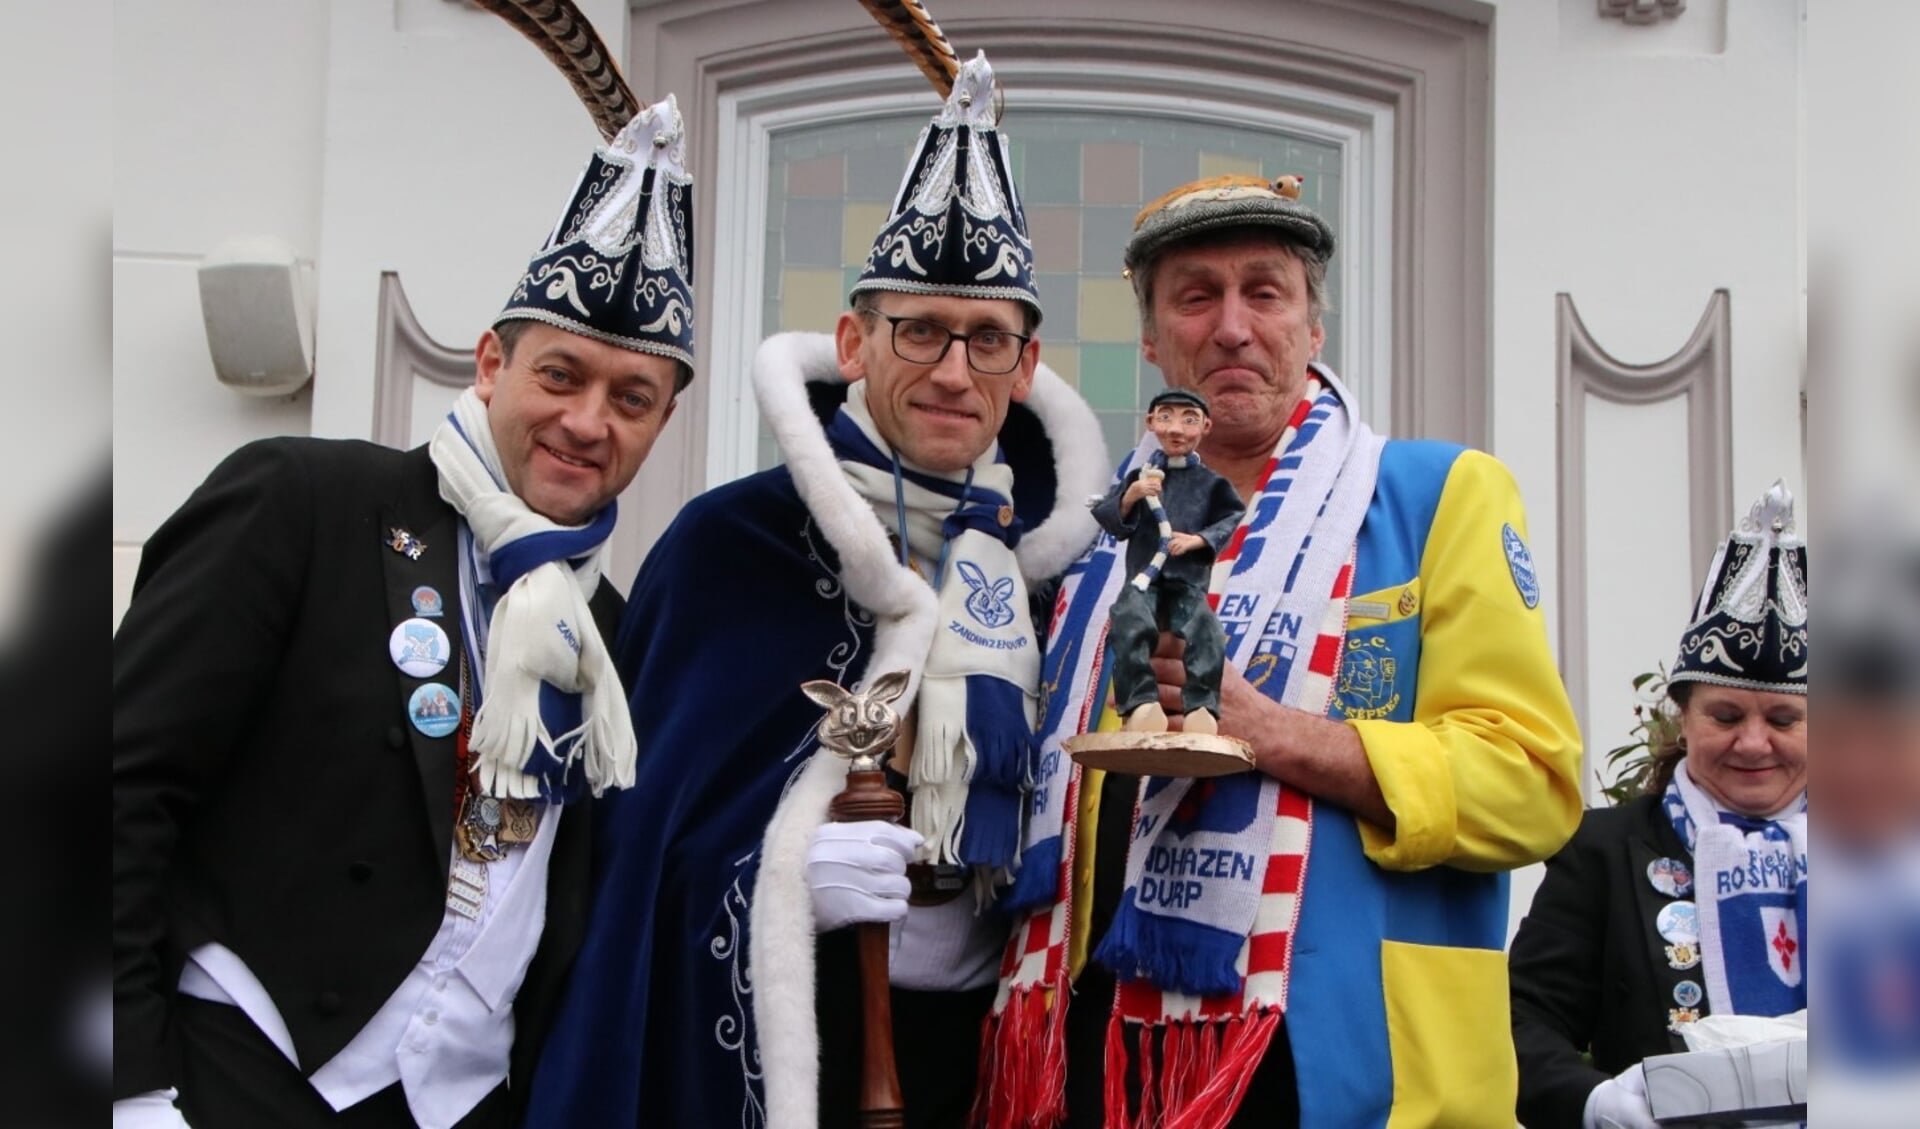 Tijdens carnaval 2020 kreeg Sjef van Creij (rechts) het beeldje van Hannus d’n Heiboer overhandigd uit handen van Prins Dirk d'n Urste. Dit vanwege zijn vele vrijwillige verdiensten voor het Zandhazendurps carnaval.